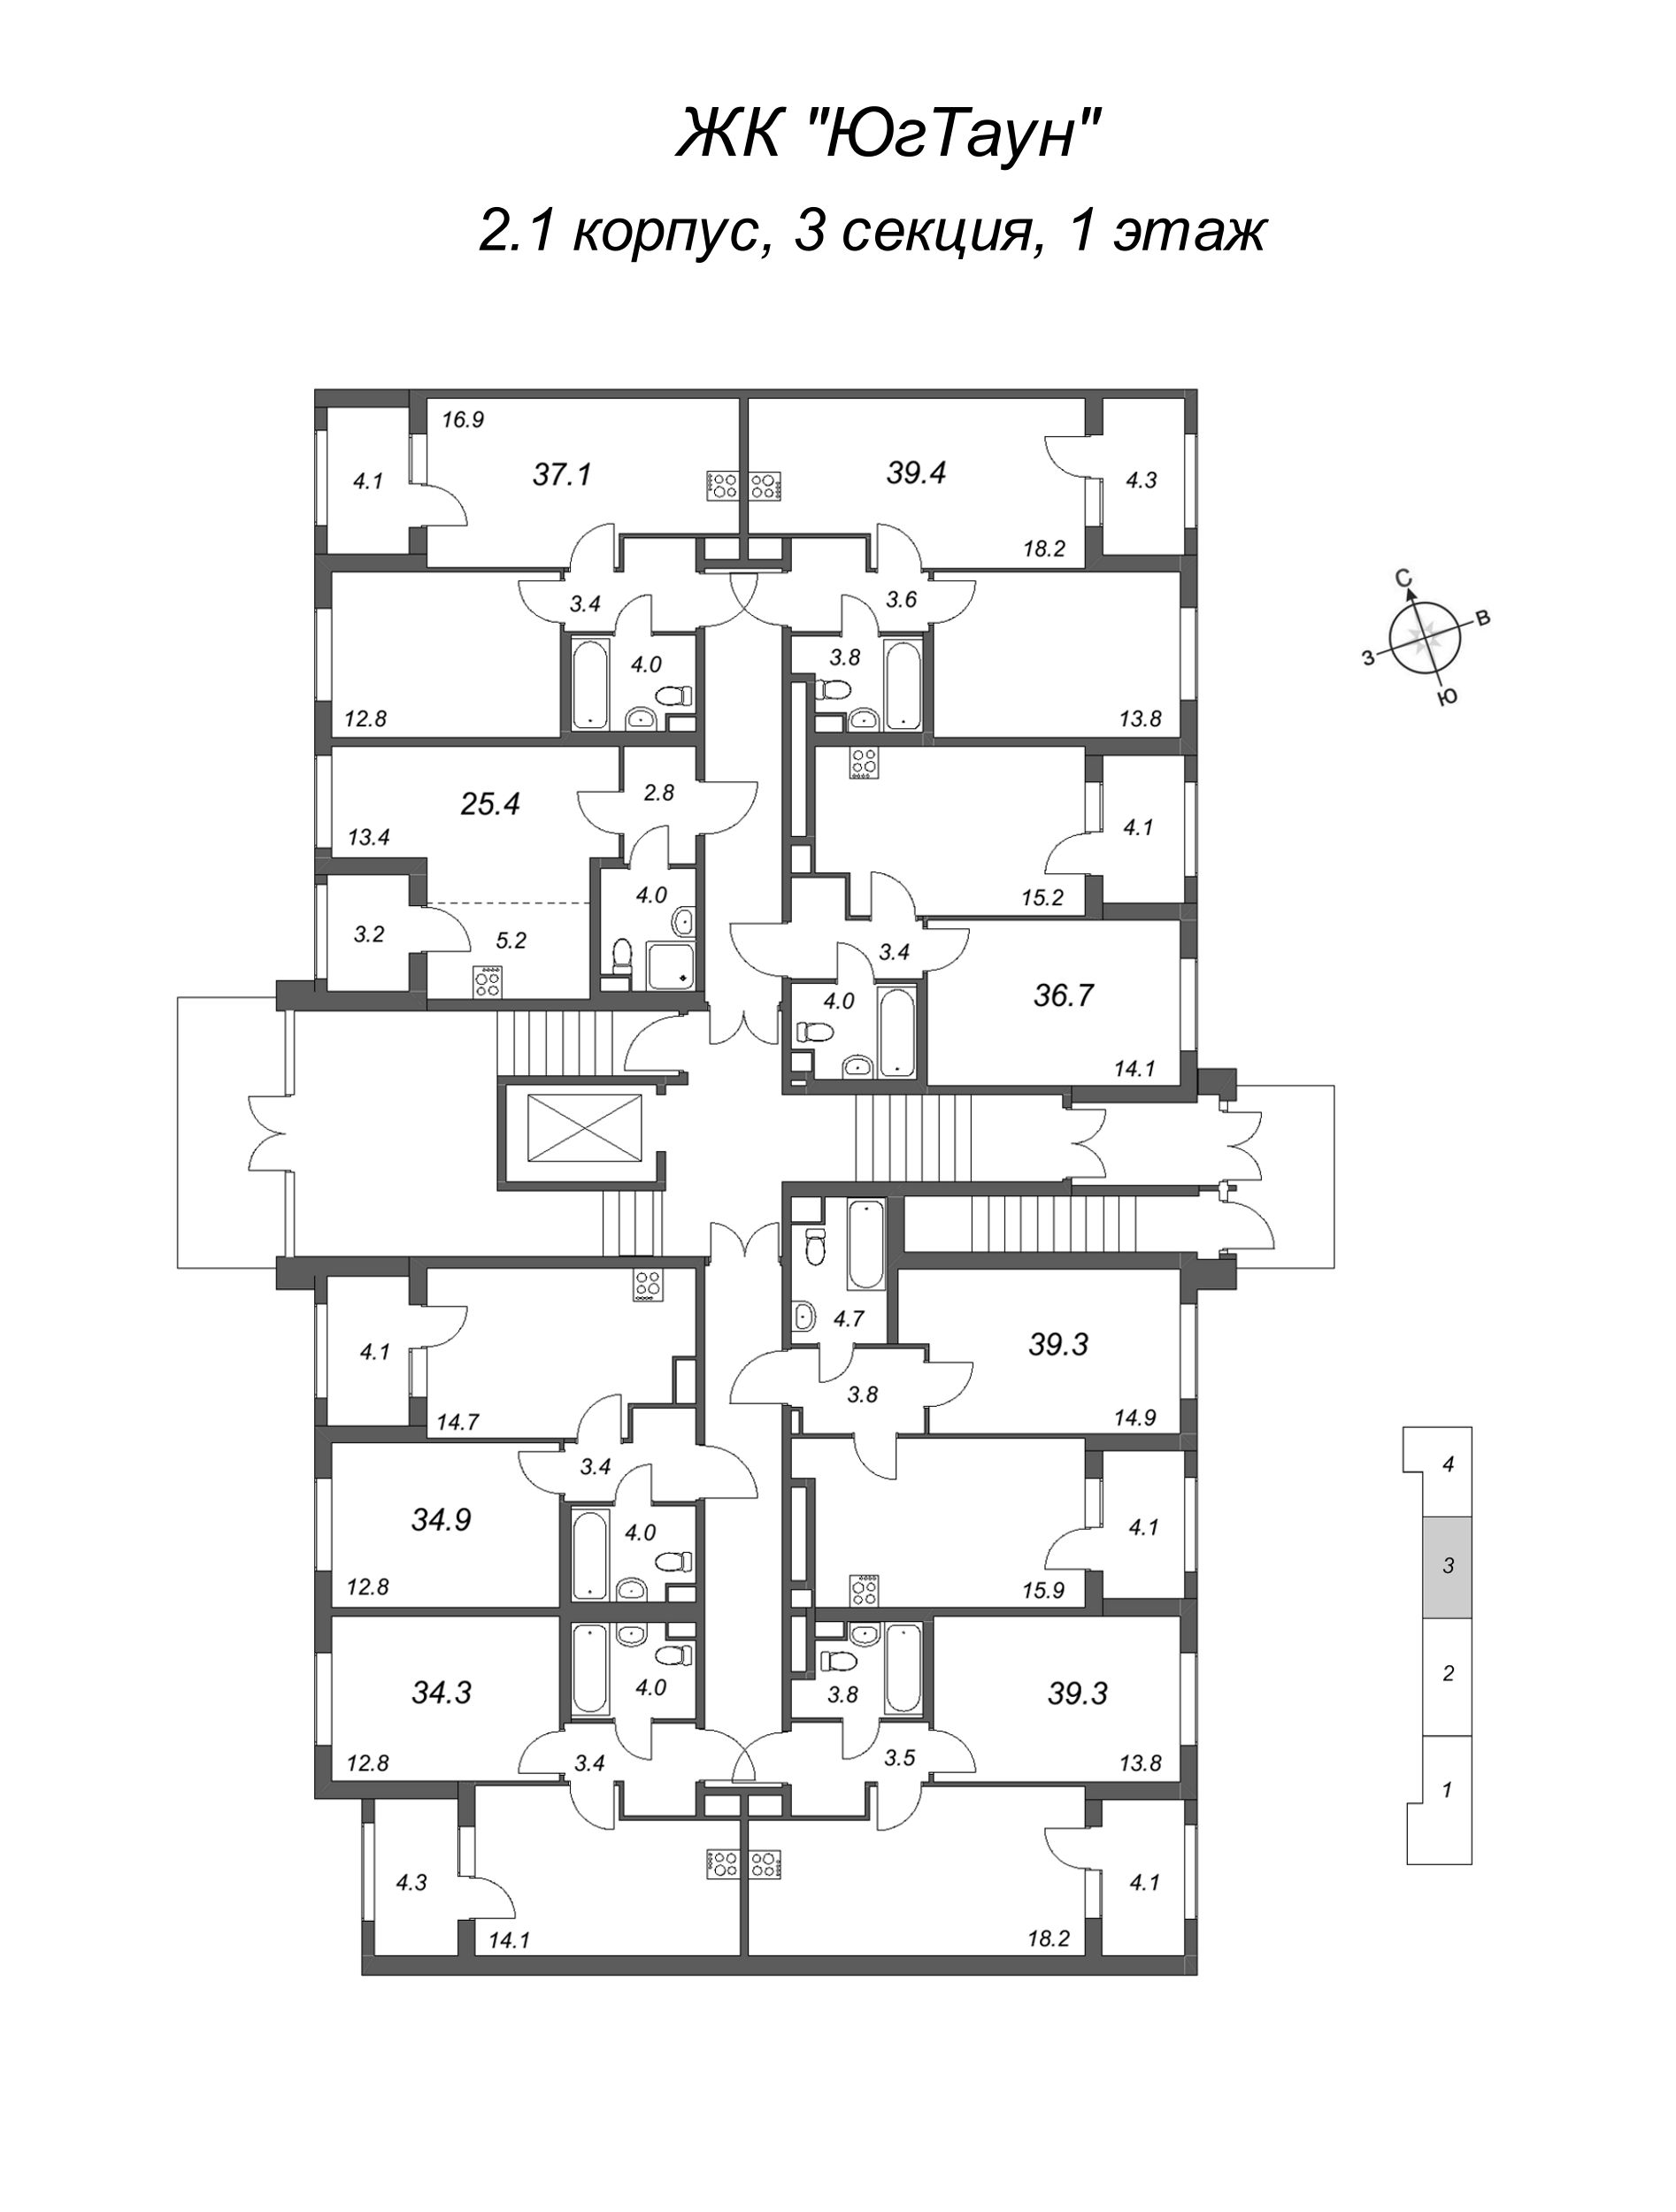 Квартира-студия, 25.4 м² в ЖК "ЮгТаун" - планировка этажа